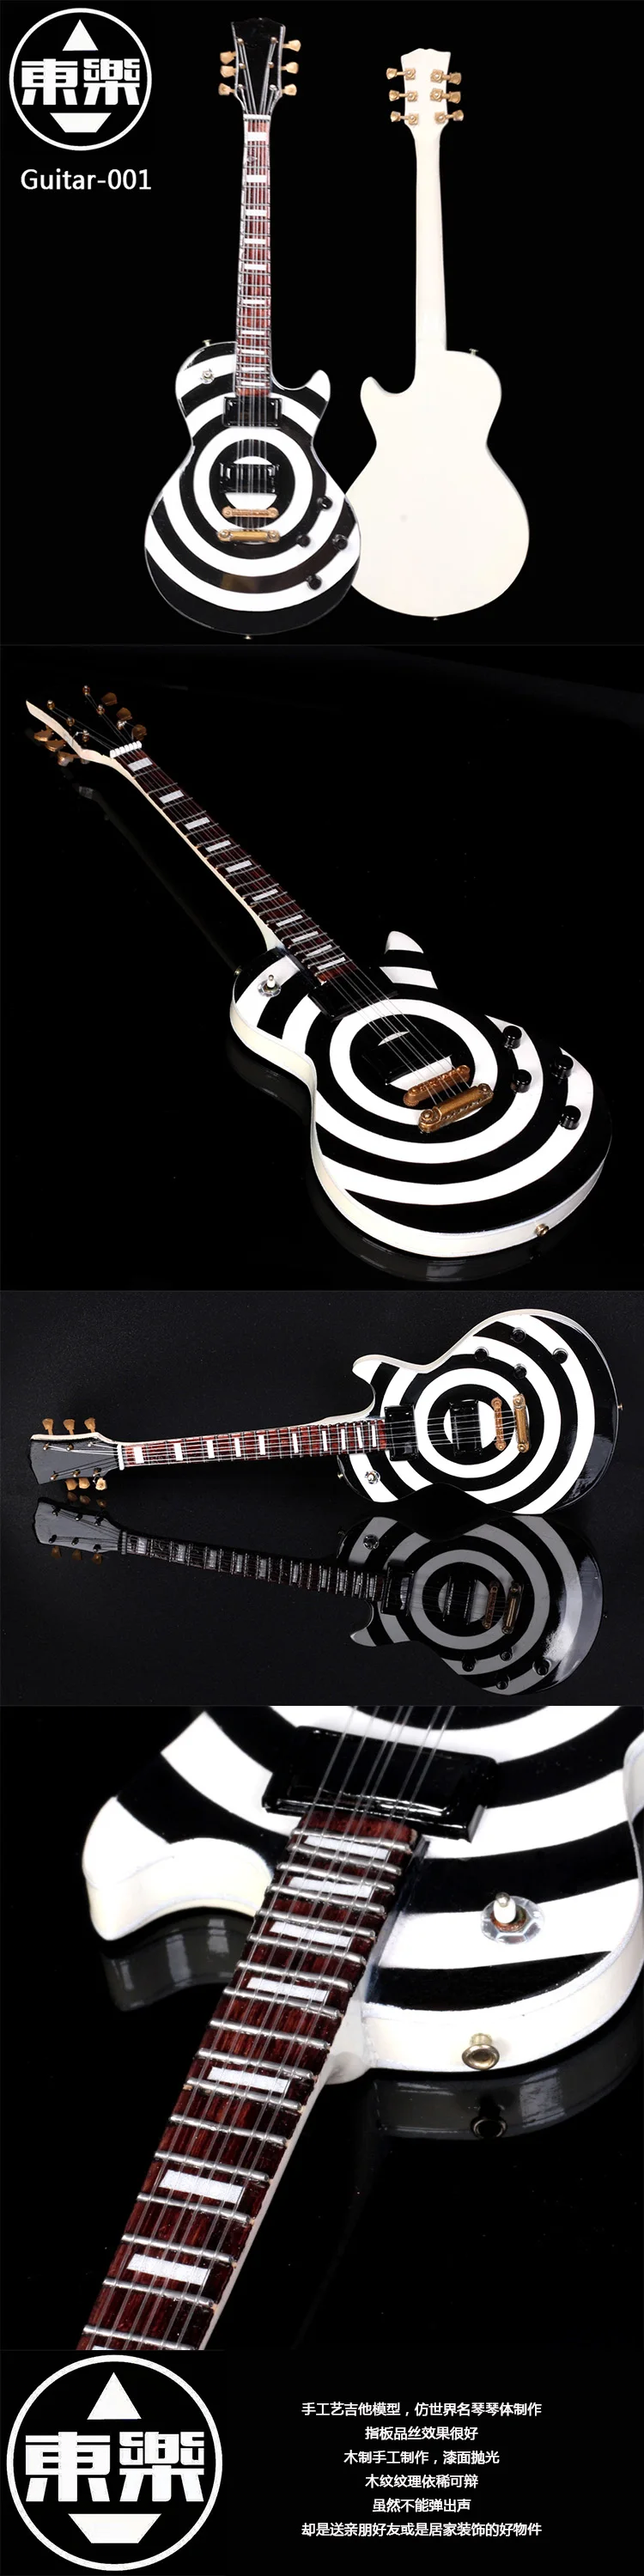 Деревянный ручной работы миниатюрный Zakk Wylde Bullseye LP гитарный дисплей Модель guitar-001 с Чехол и подставкой(не актуальная гитара